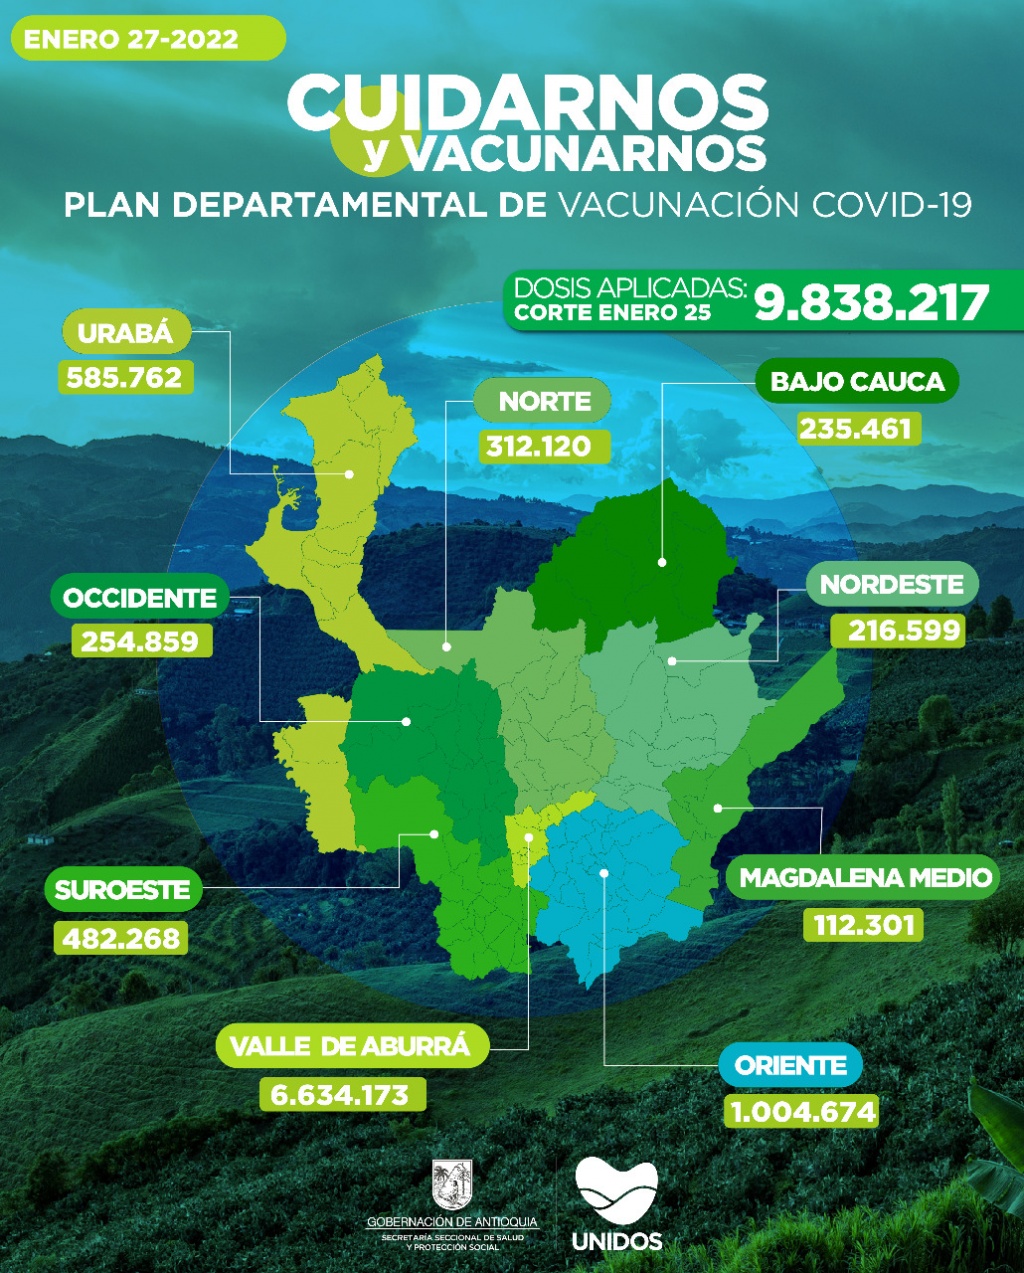 Con 29.459 dosis aplicadas, Antioquia llegó el 25 de enero a 9.838.217 vacunados contra COVID19